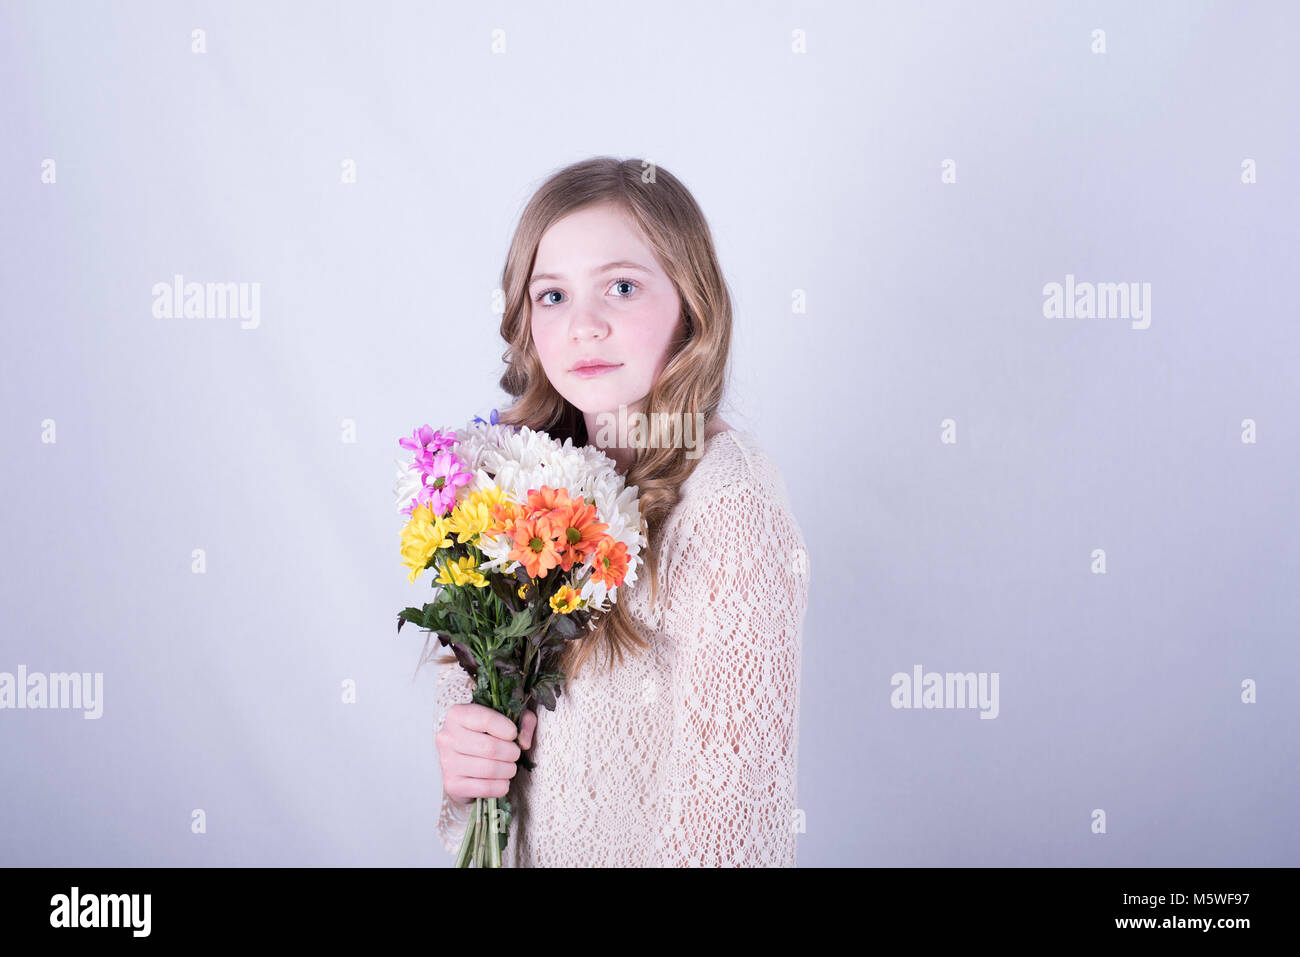 Jeune fille de 12 ans avec de longs cheveux blond sale incliné holding bouquet de marguerites colorées, les yeux grands ouverts, l'expression triste, fond blanc Banque D'Images